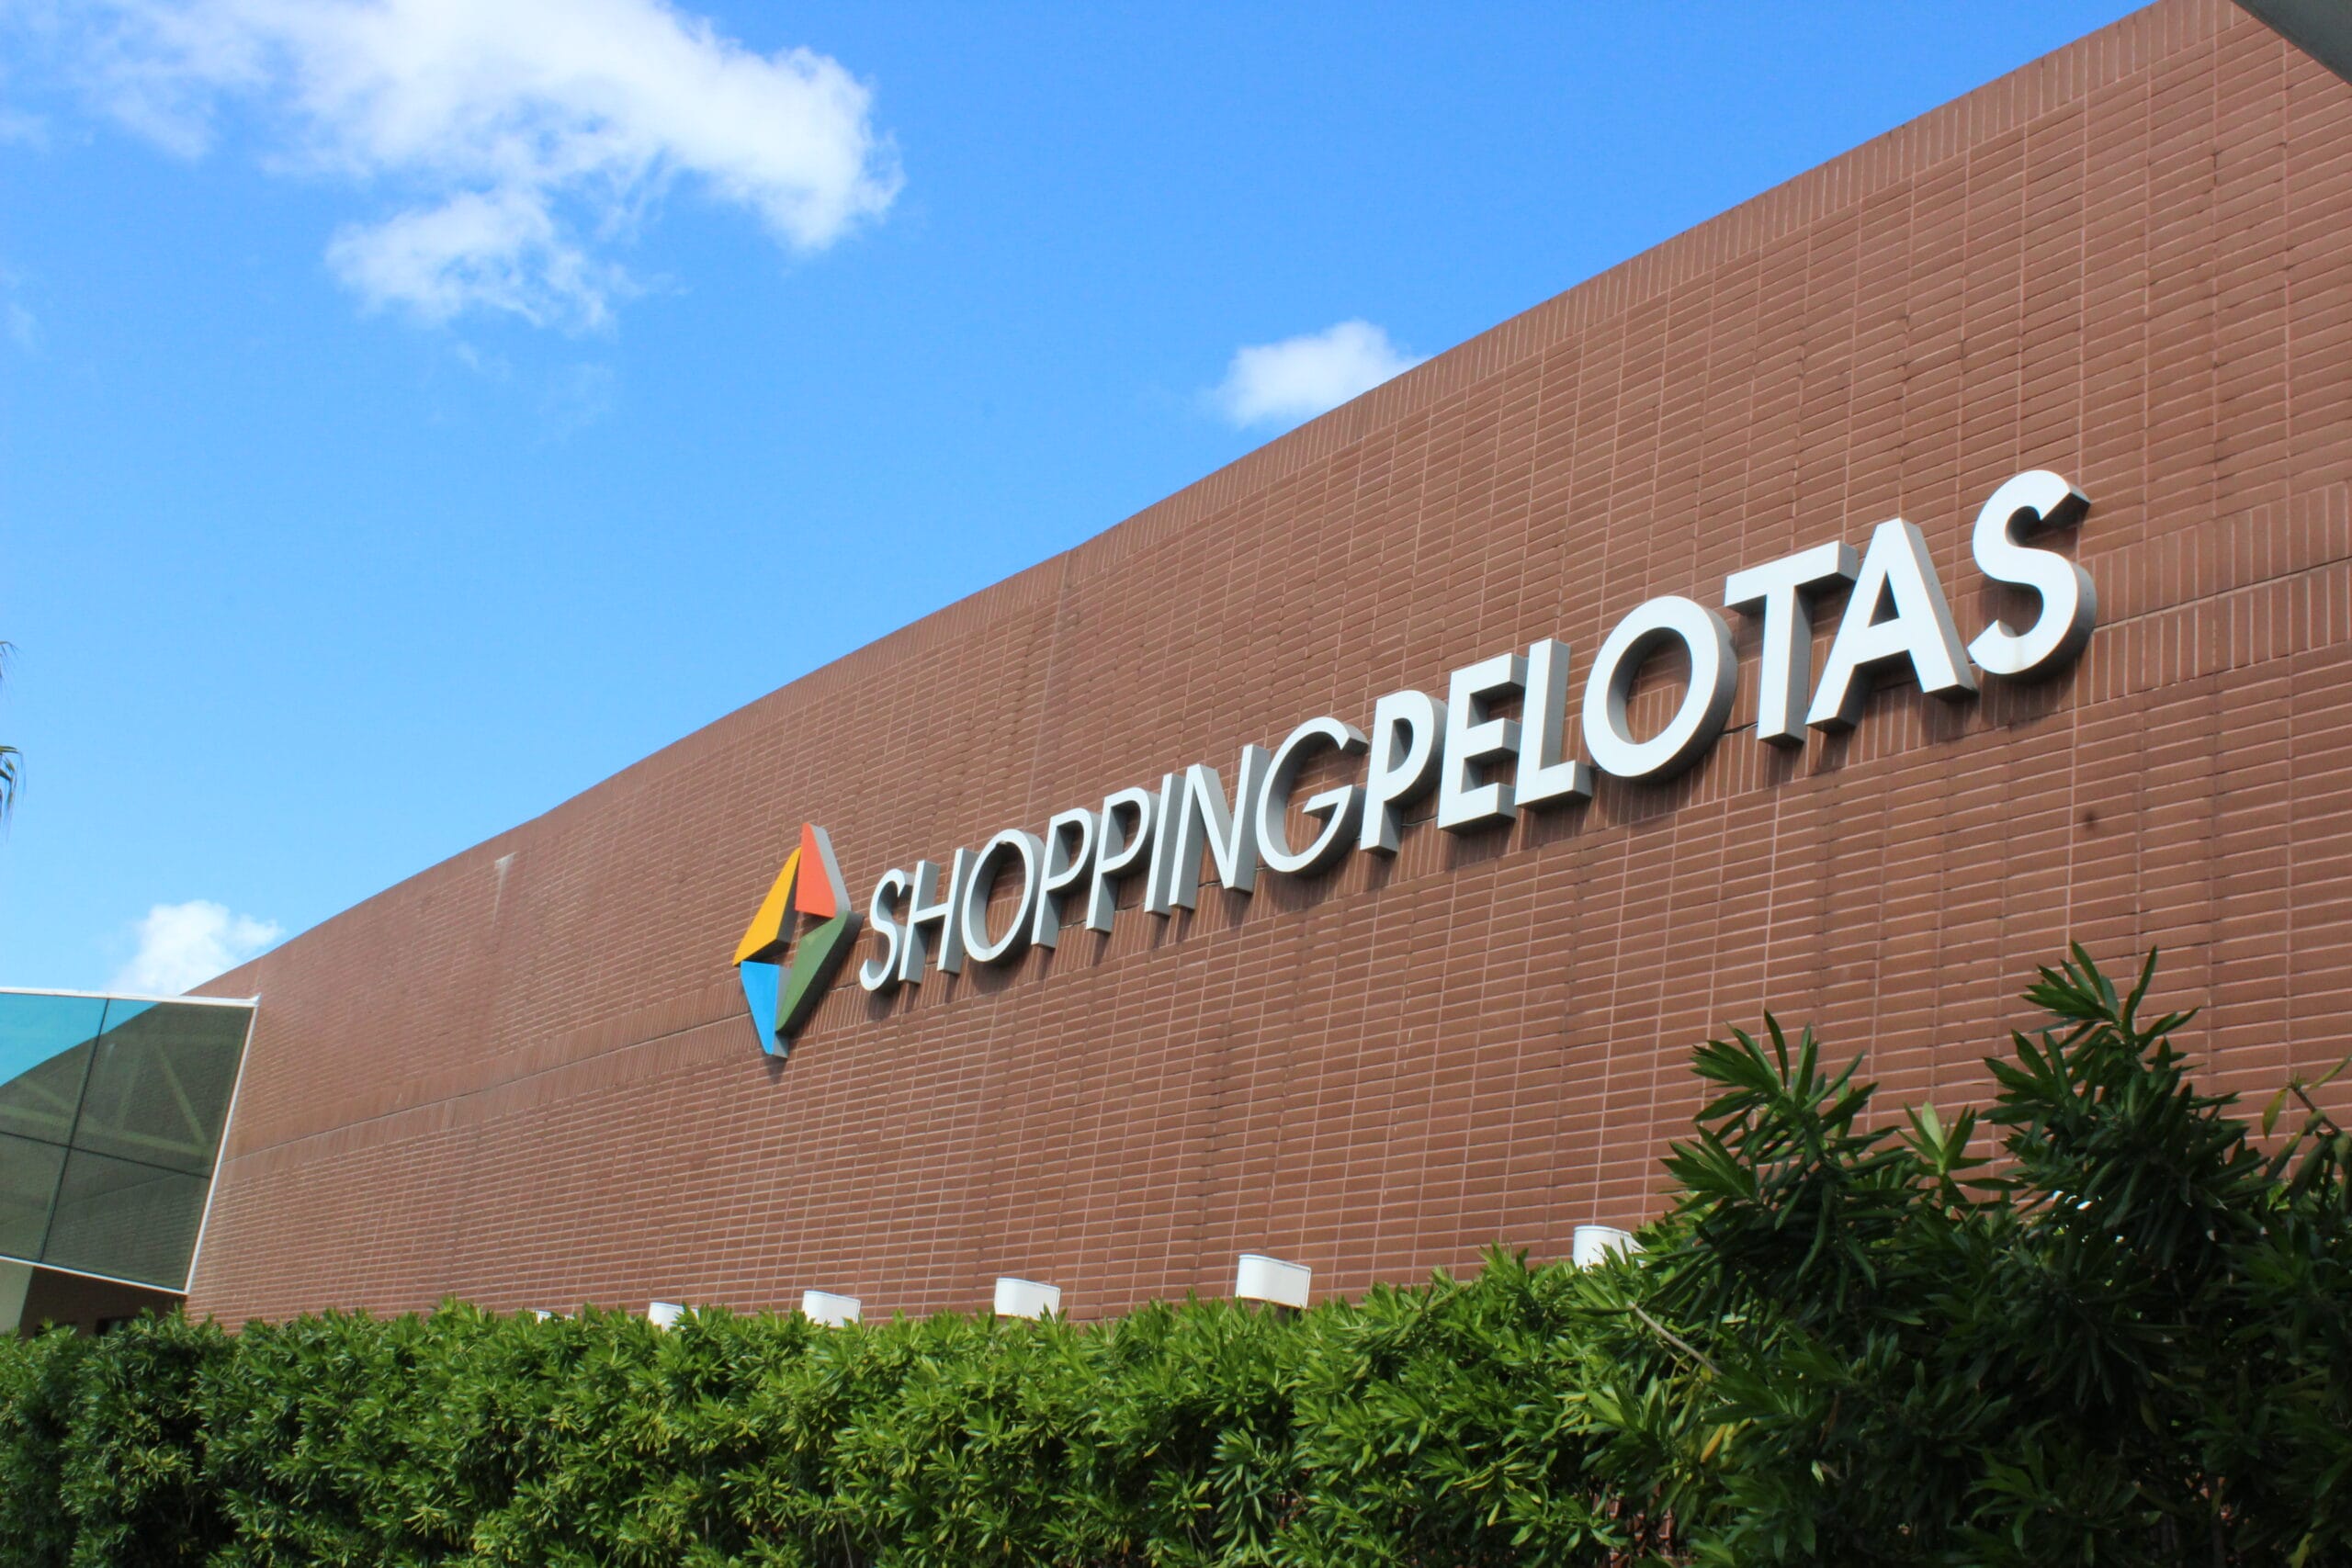 Shopping Pelotas